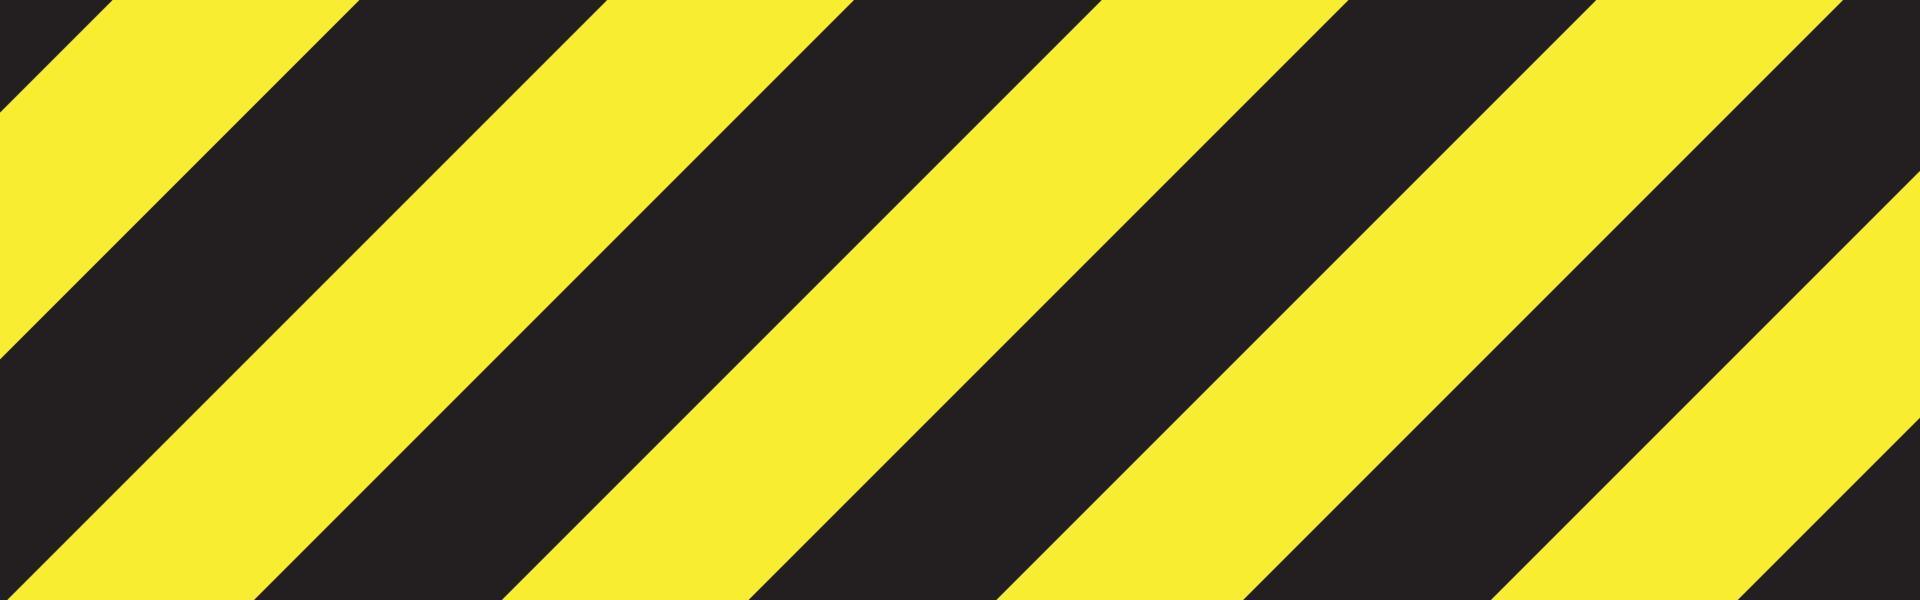 ligne de couleur jaune et noire. signe de prudence. panneau d'avertissement. vecteur